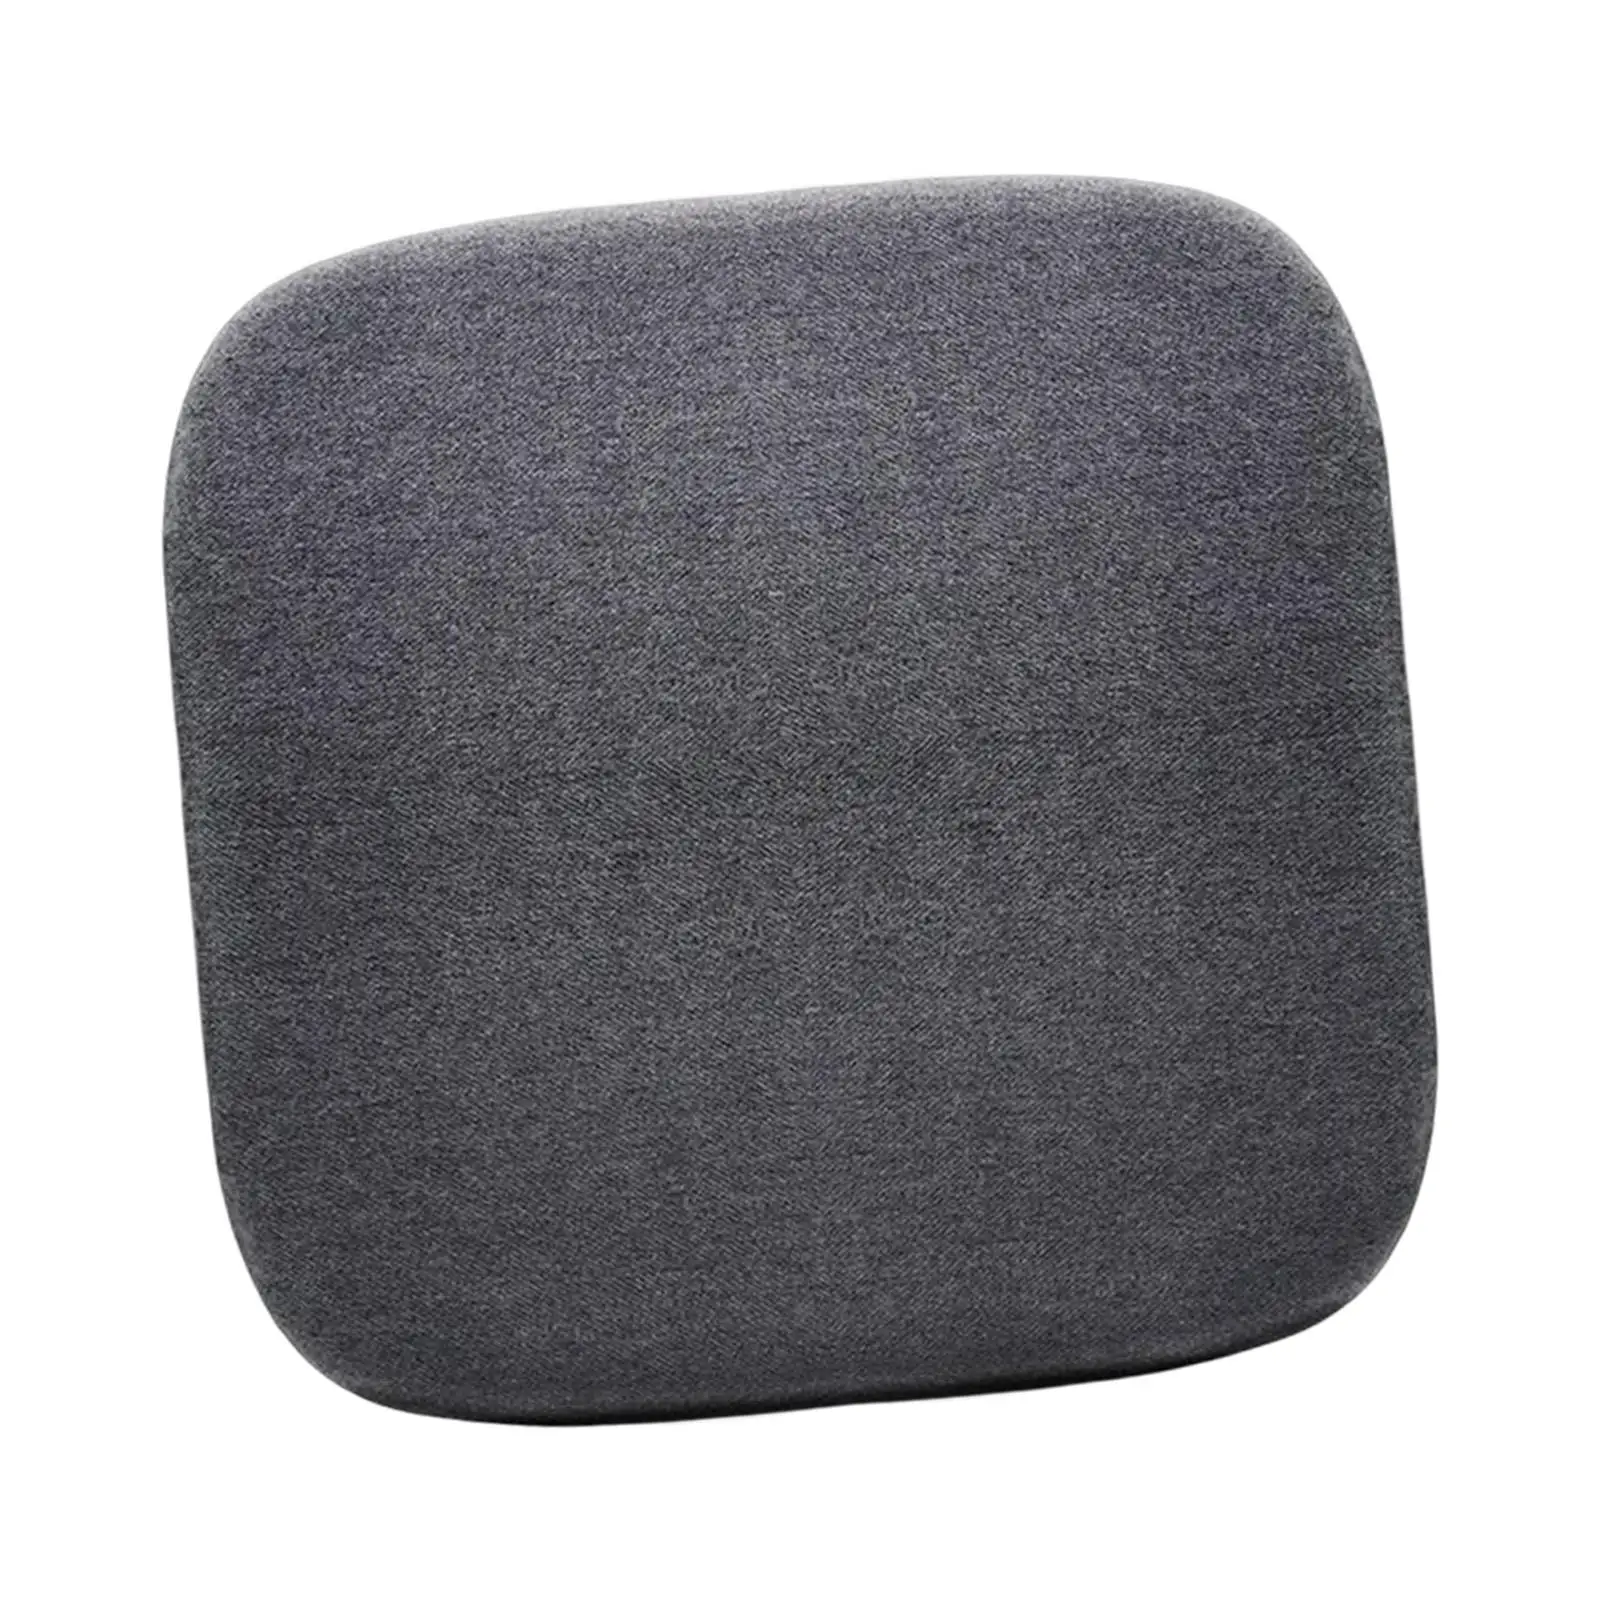 Memory Foam Seat Cushion Comfortable Desk Chair Cushion for Car Driving Home